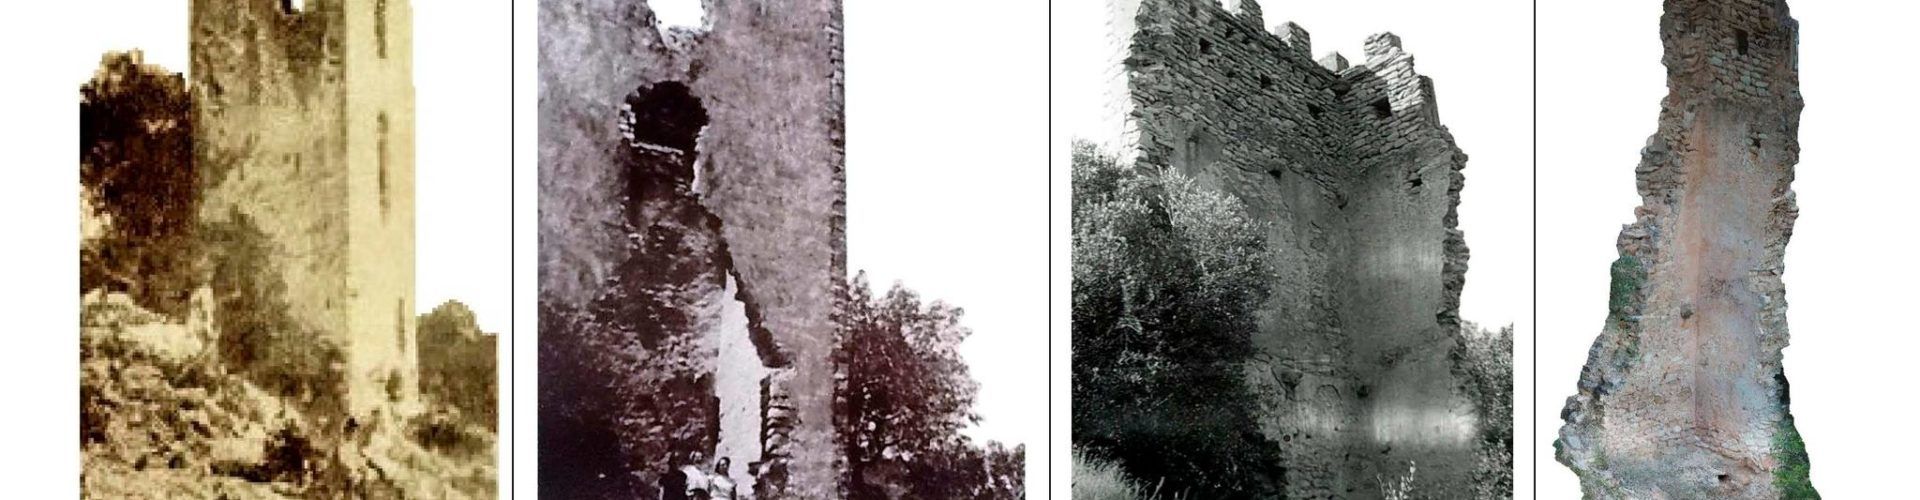 Perill d’esfondrament del BIC de la Torreta dels Moros al Puig de la Misericòrdia